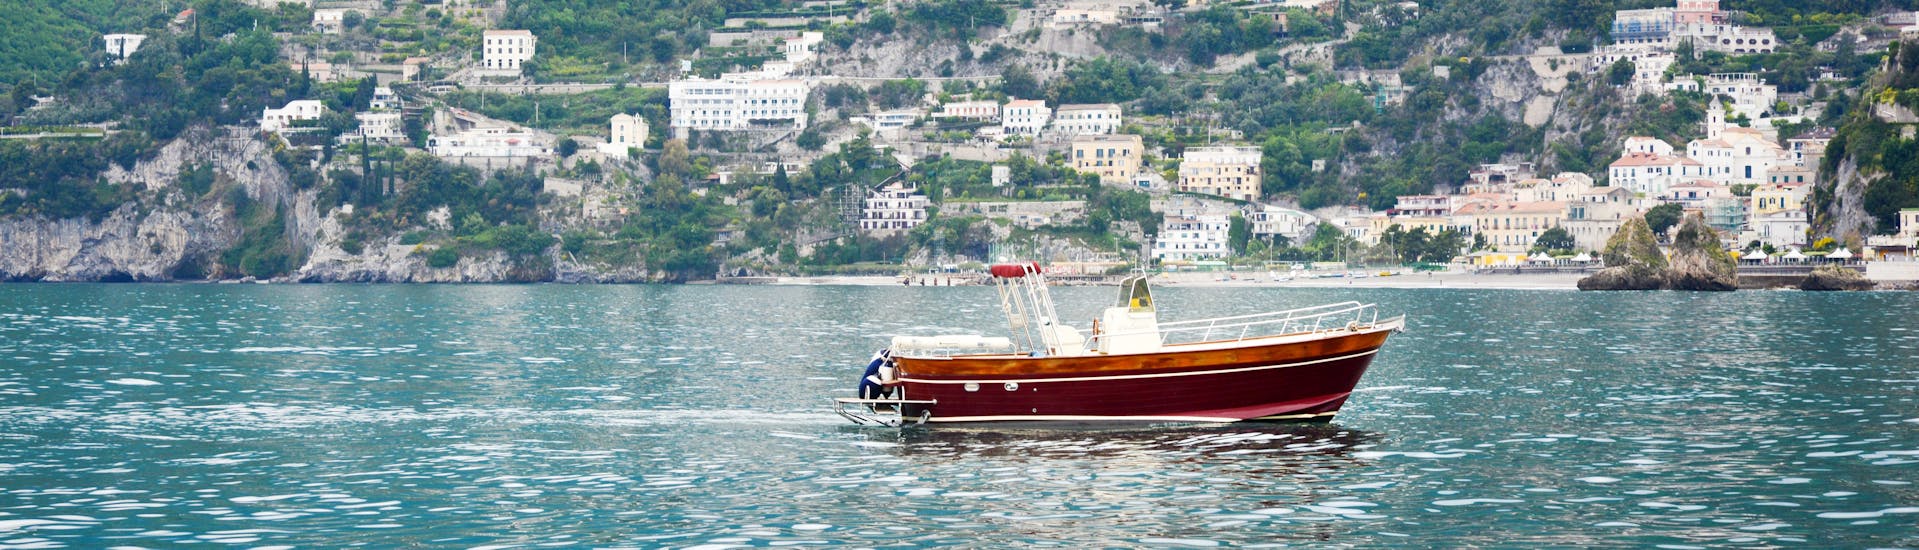 Das Boot von Blu Mediterraneo Amalfiküste während der Bootstour von Salerno zur Insel Capri.